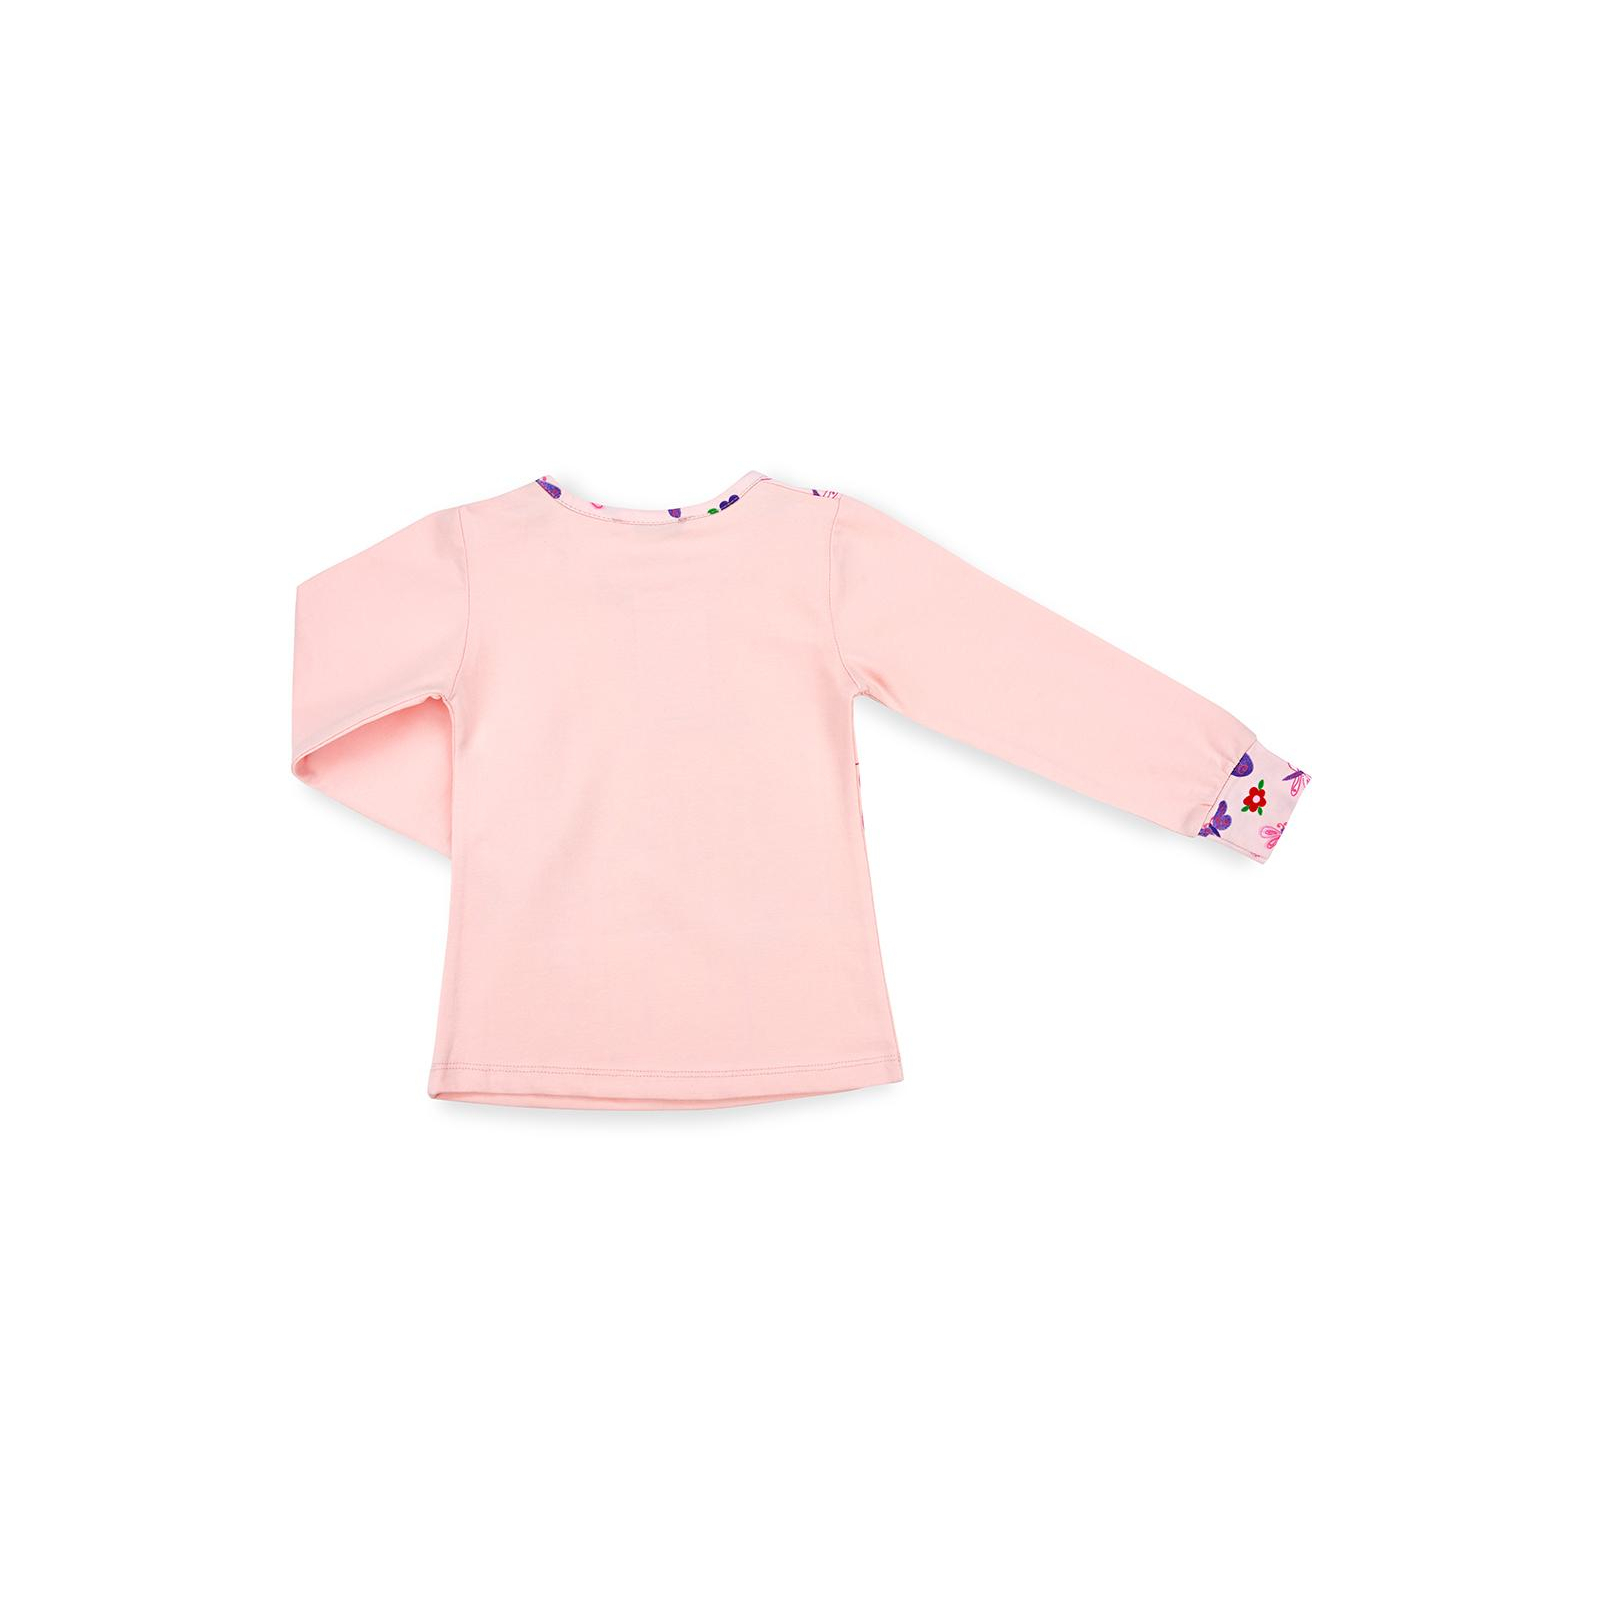 Пижама Matilda с бабочками (4858-2-92G-pink) изображение 5